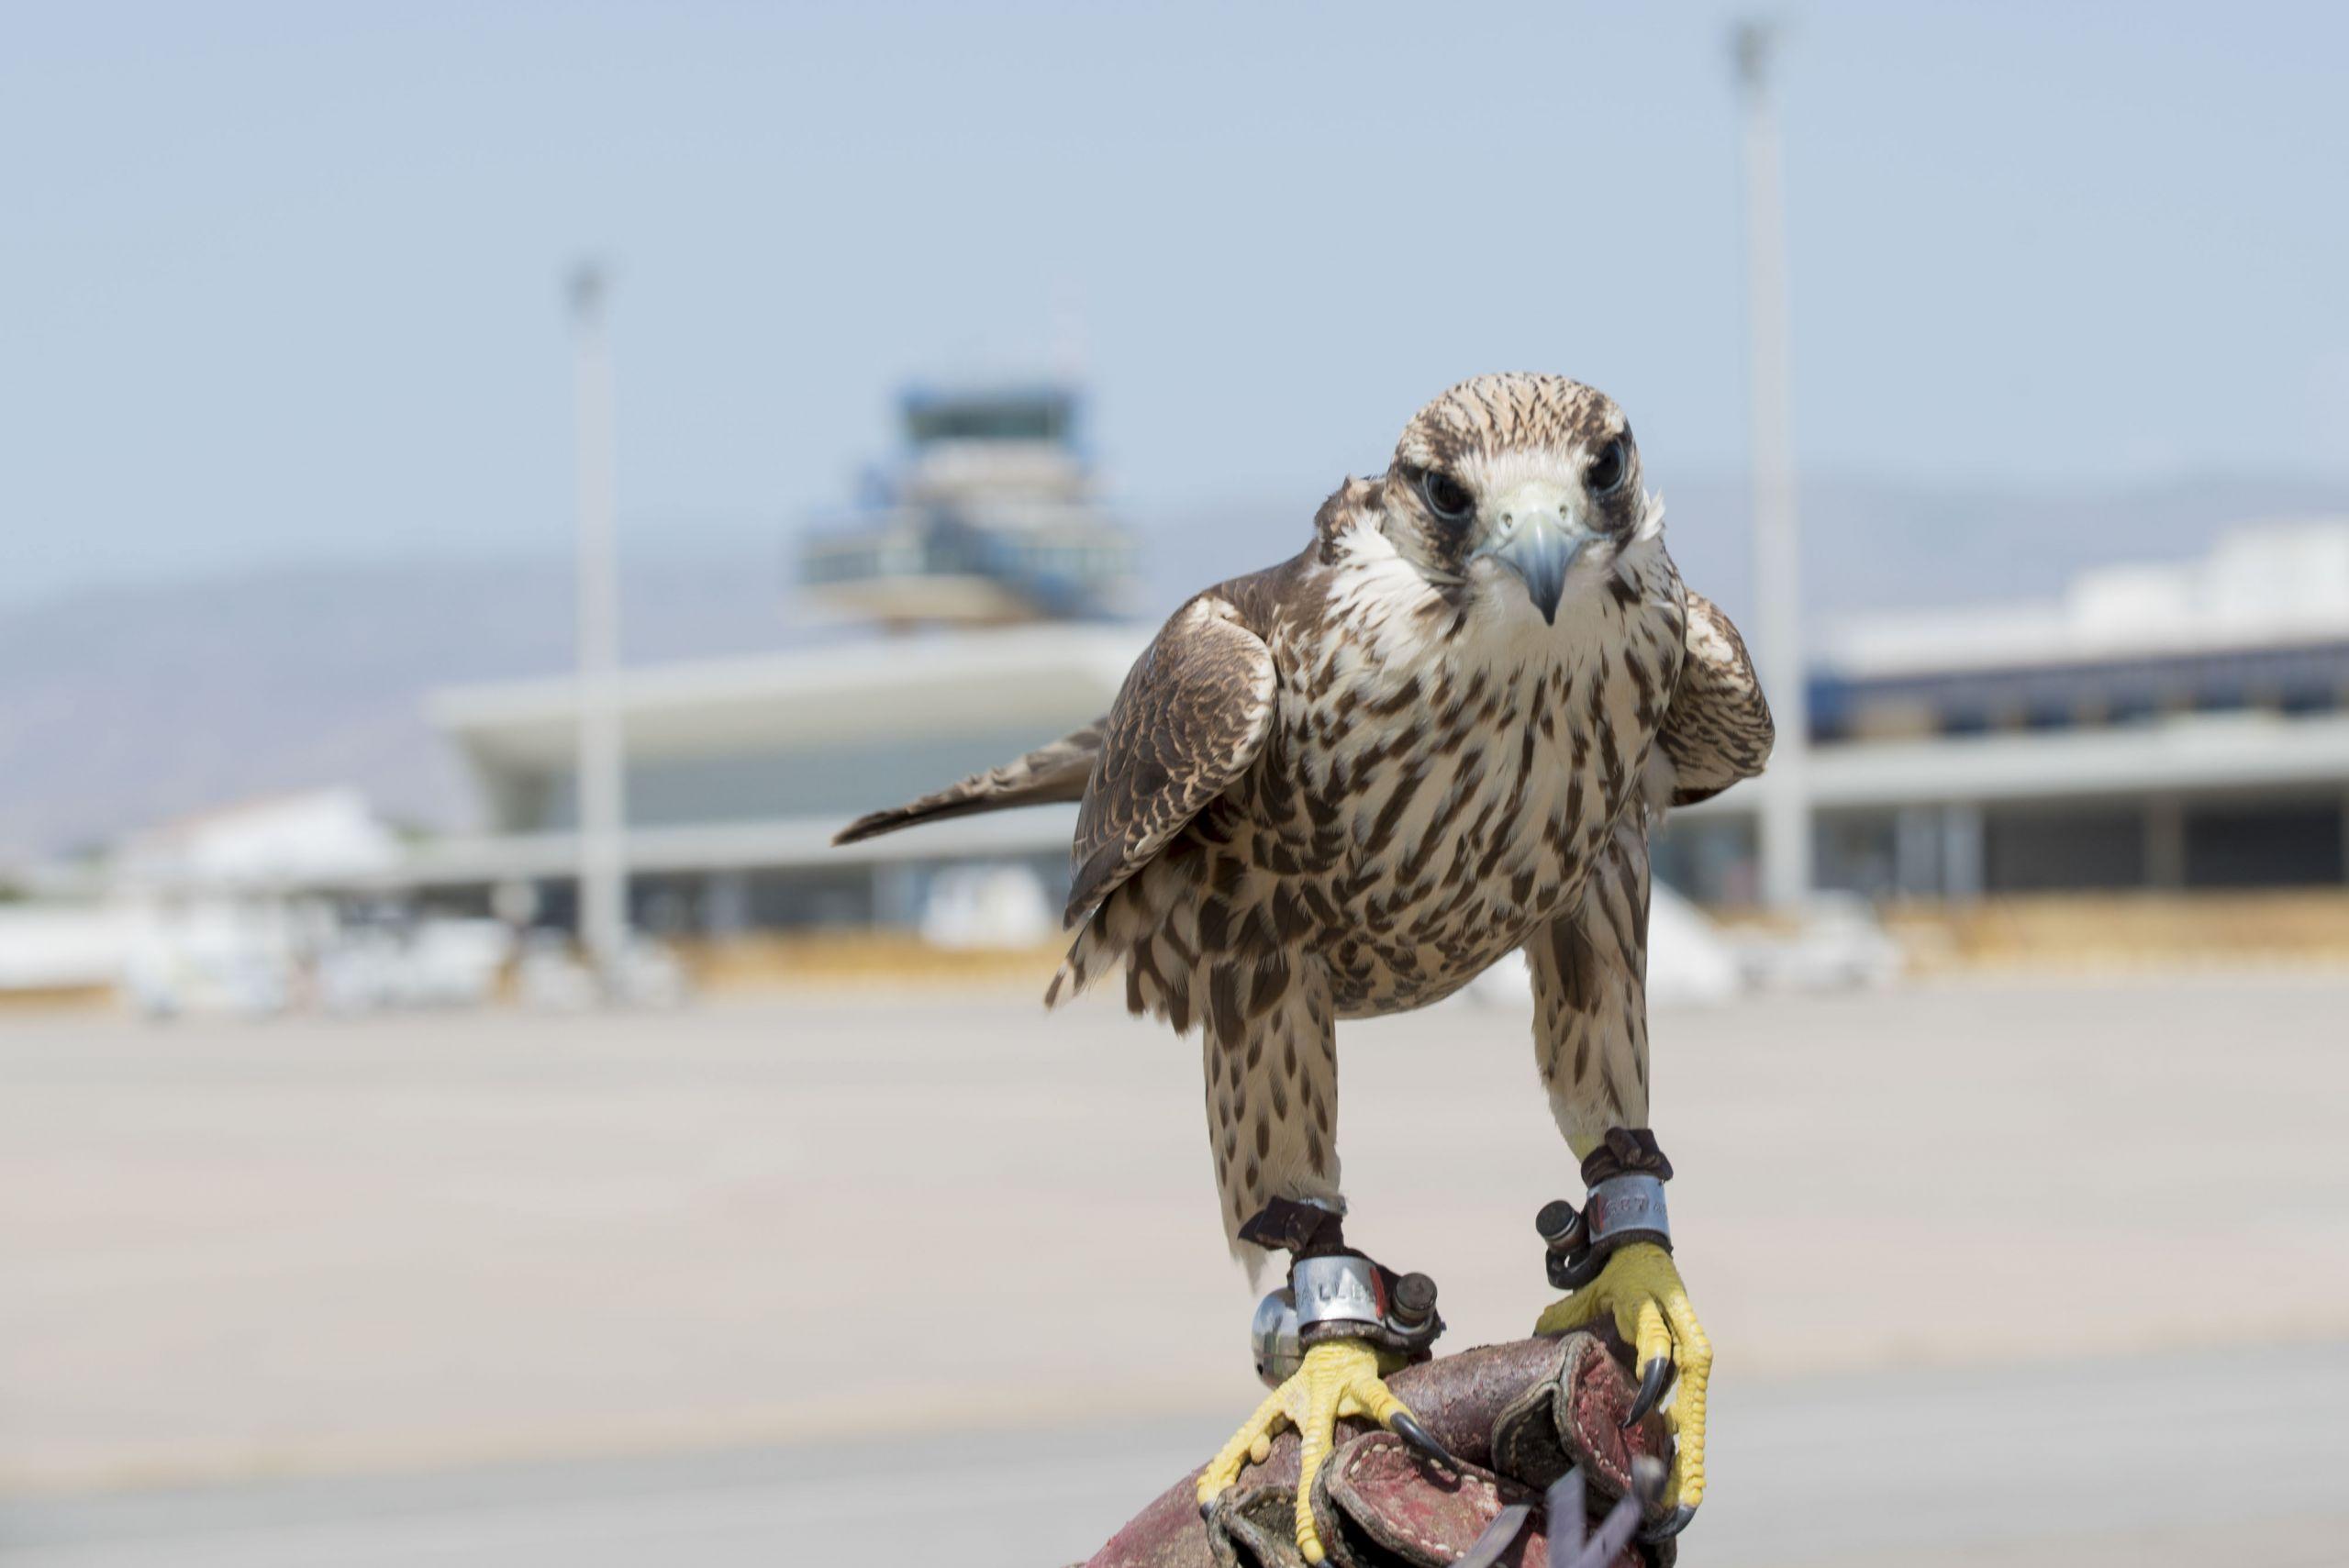 Un halcón del servicio de control de fauna en un aeropuerto (Aena).